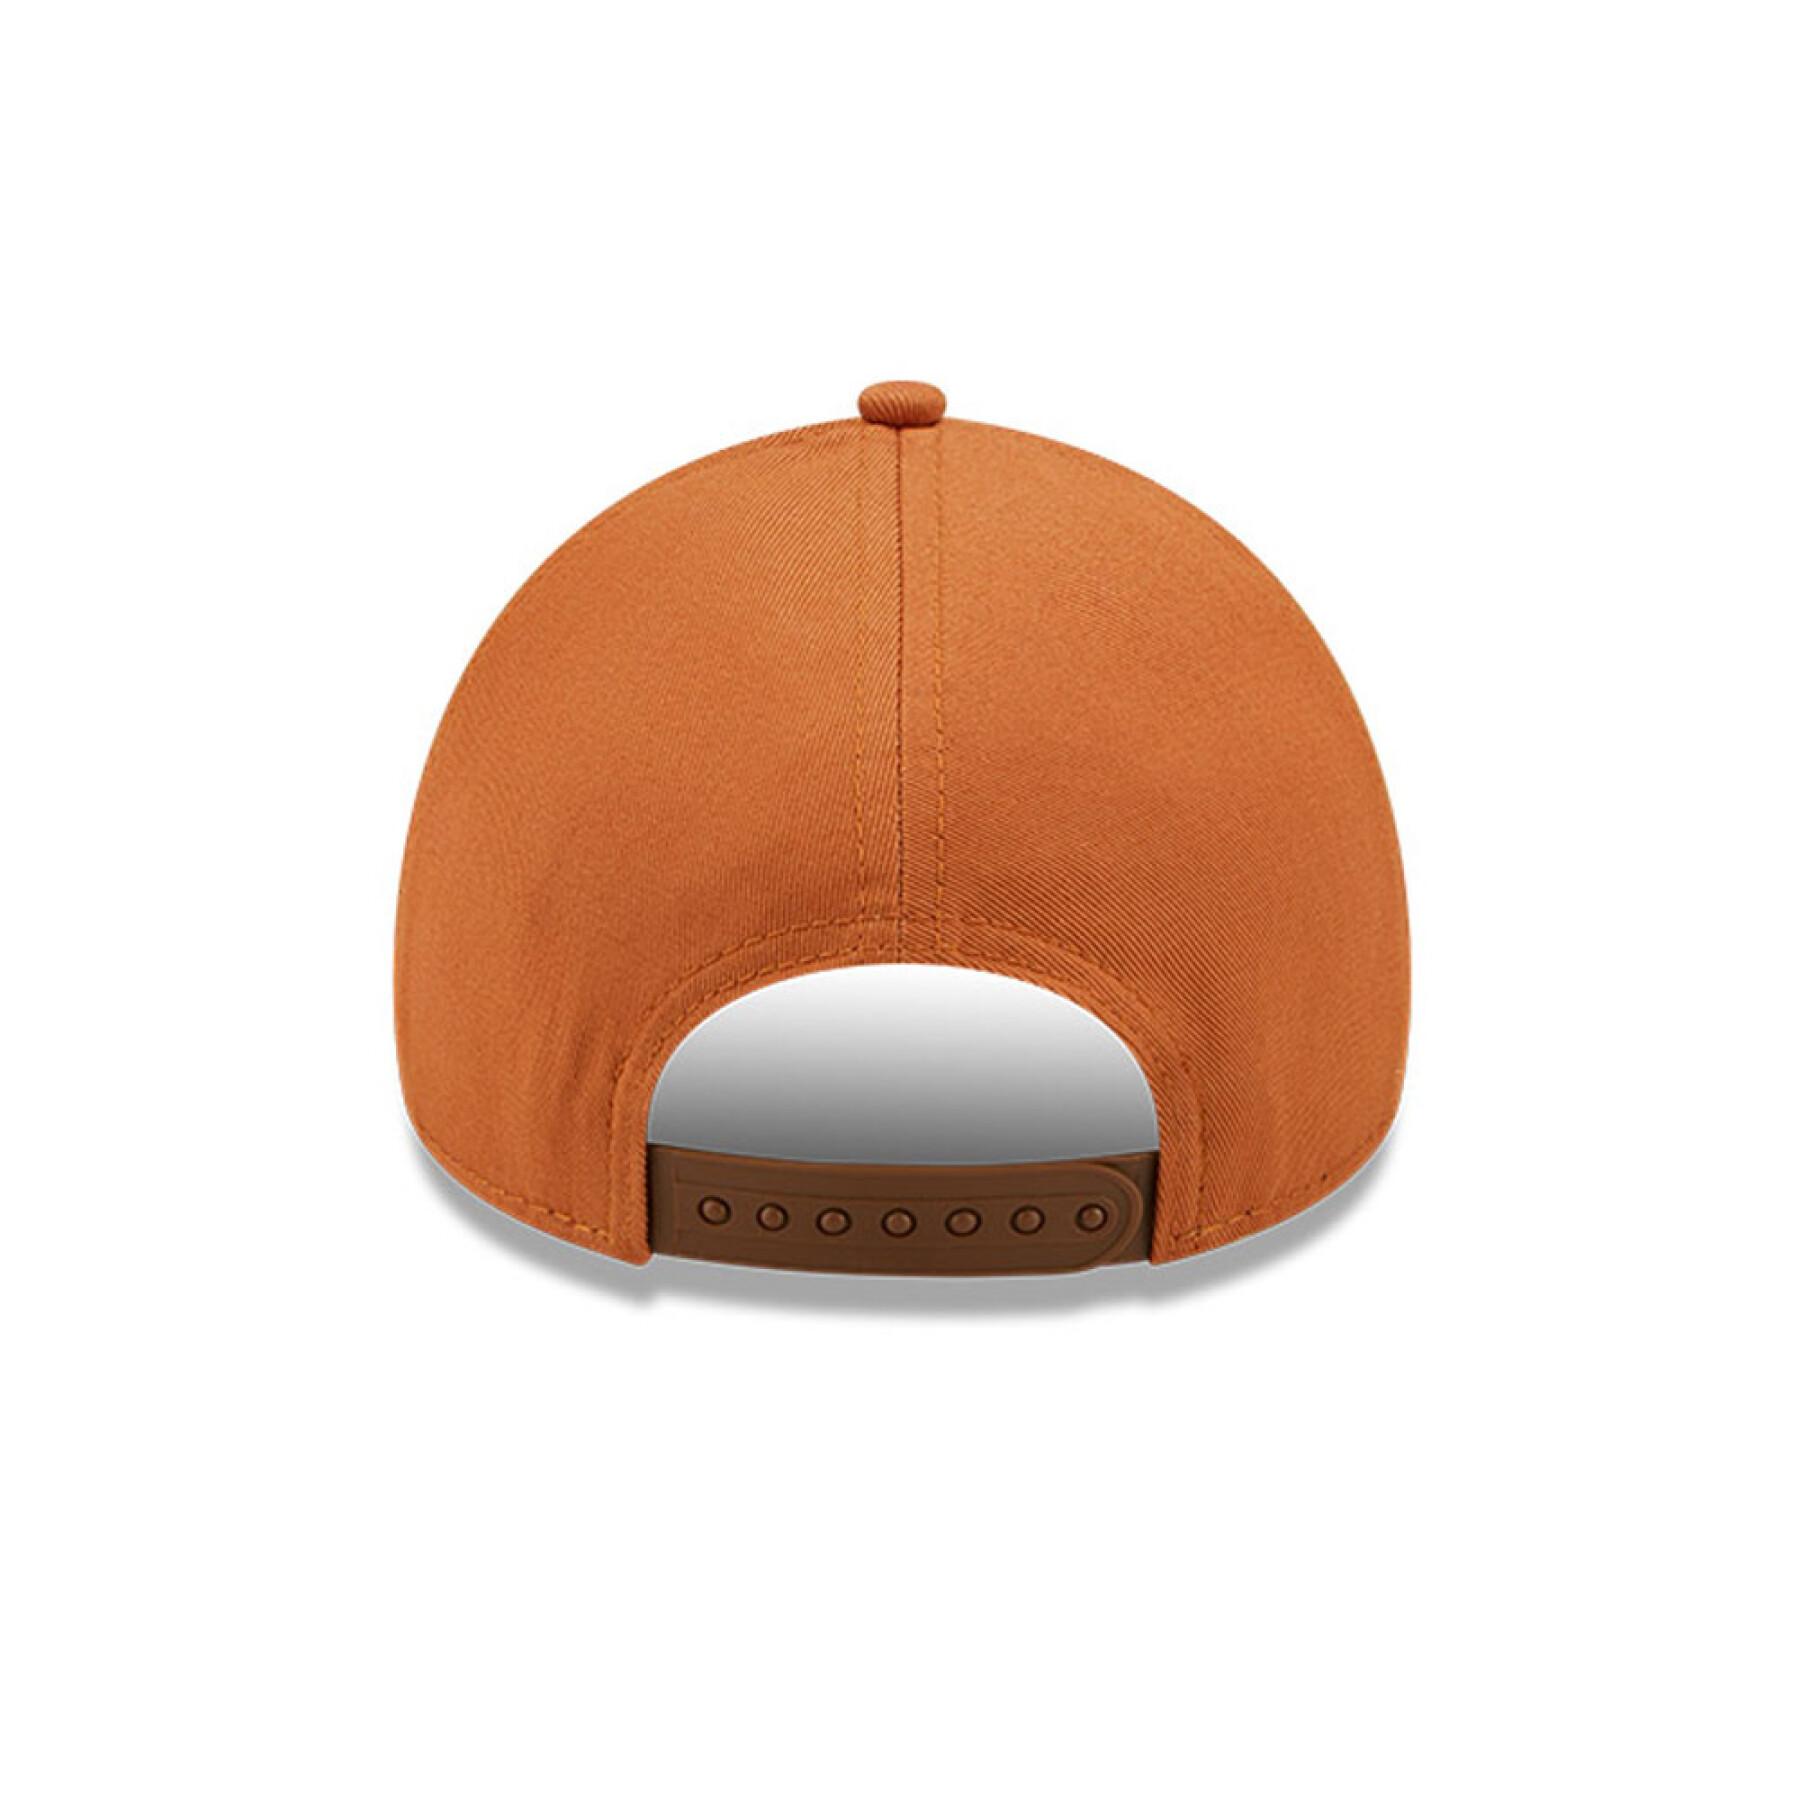 Children's cap New York Yankees colour essential